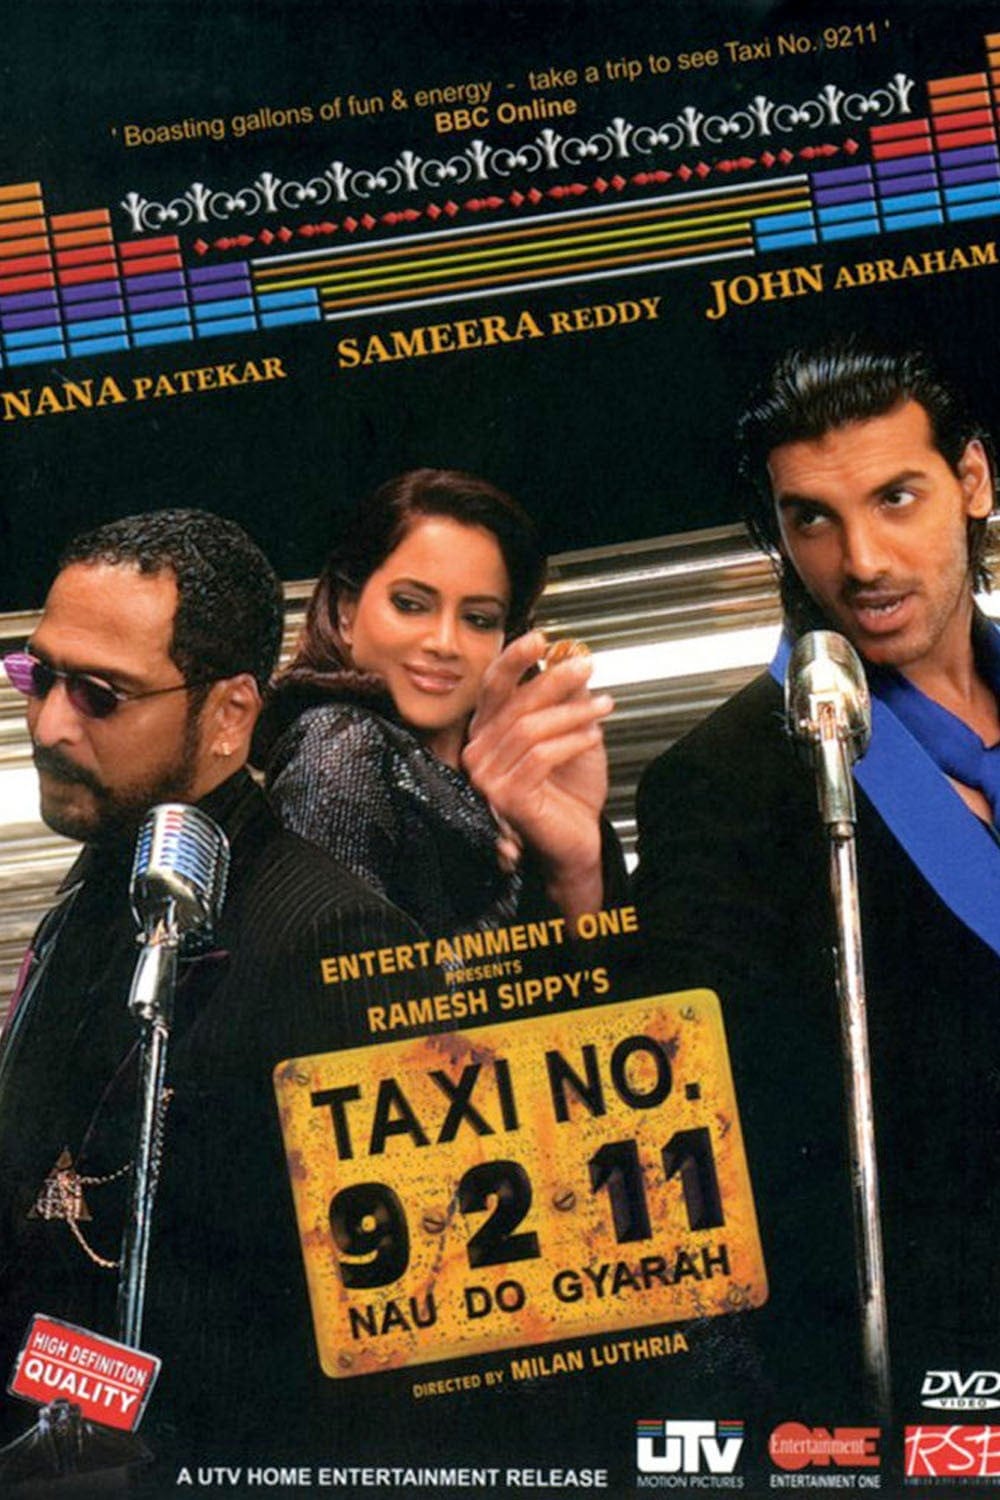 Poster for the movie "Taxi No. 9 2 11: Nau Do Gyarah"